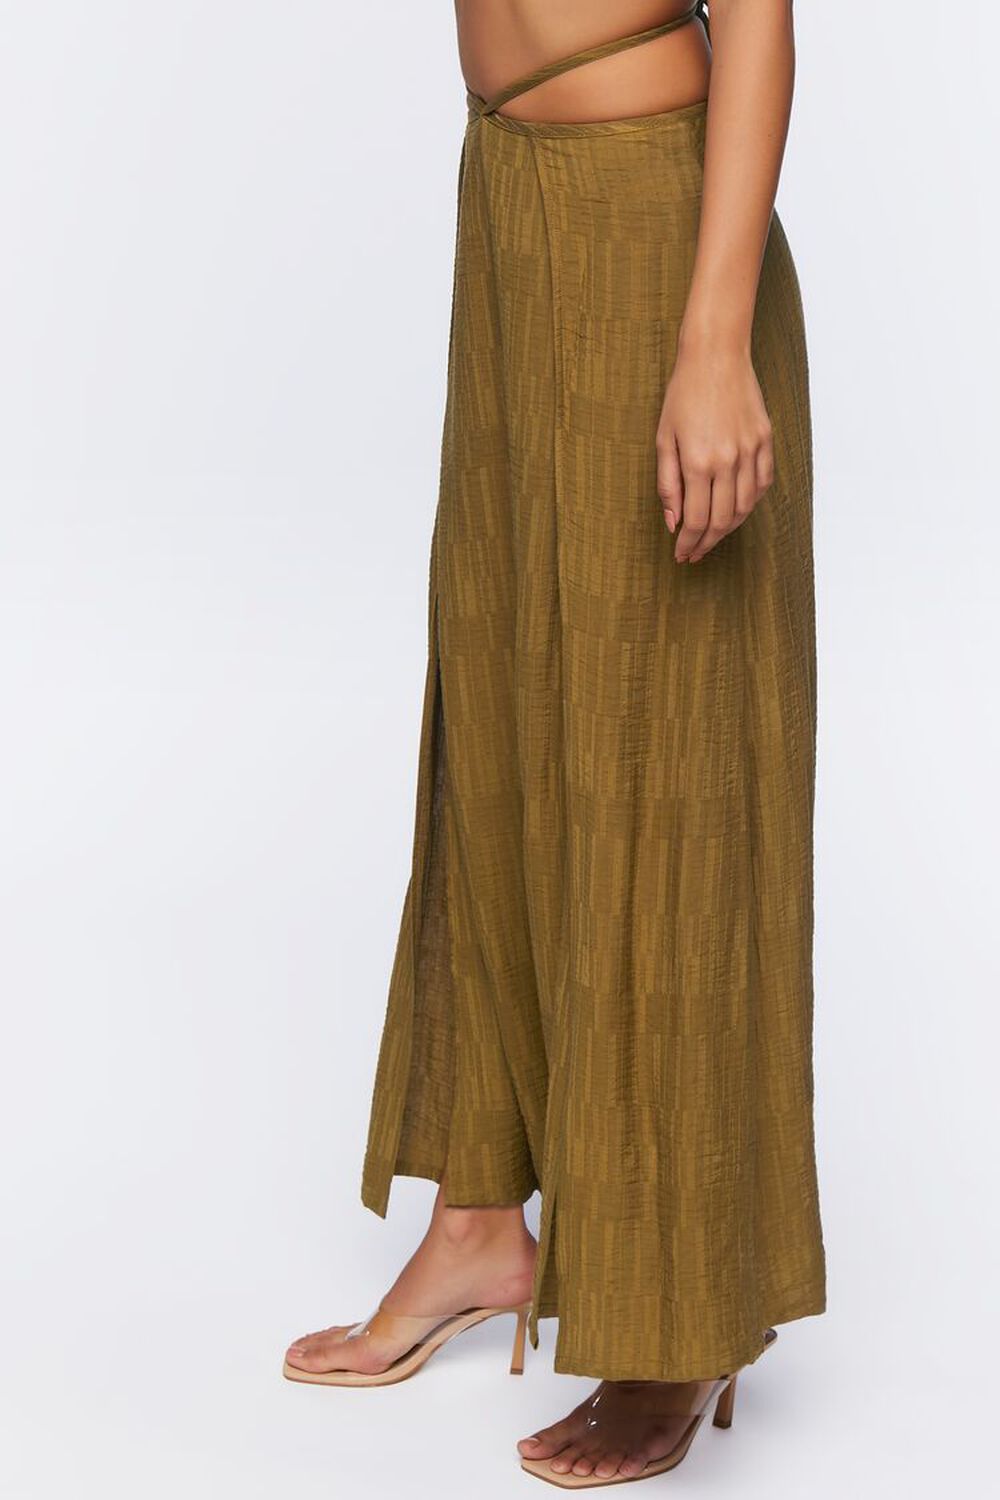 BEECH Jacquard Wrap Maxi Skirt, image 3